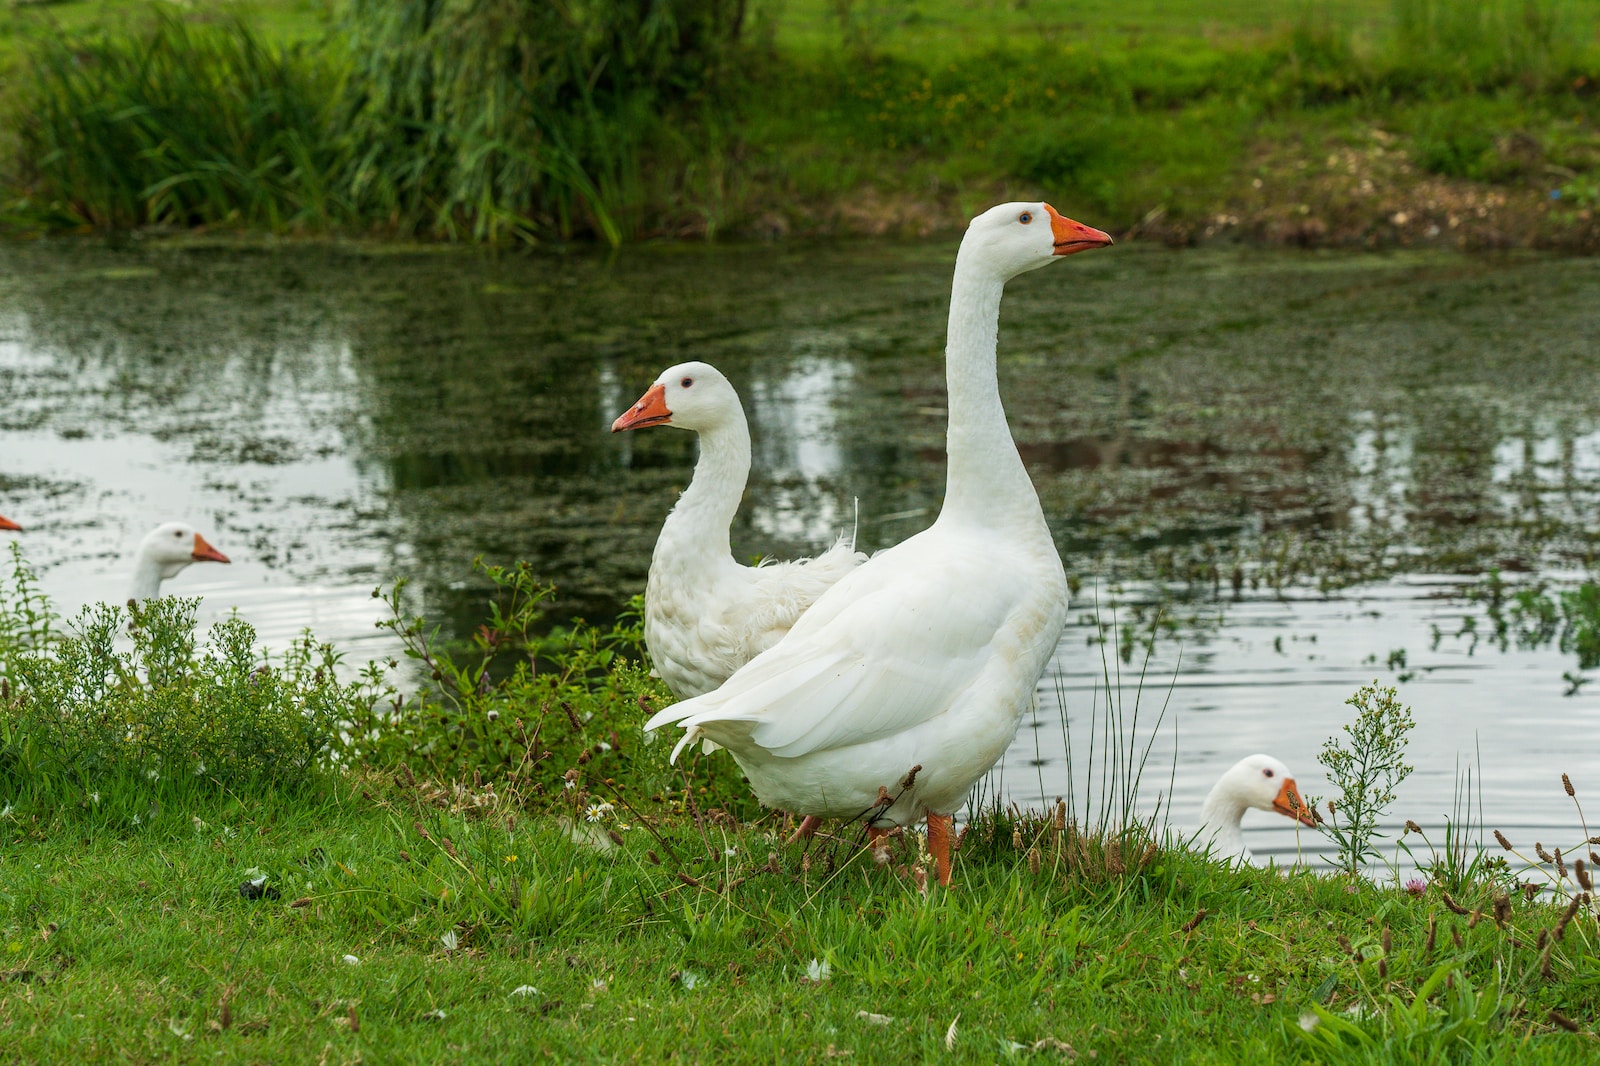 white swan on green grass near lake during daytime